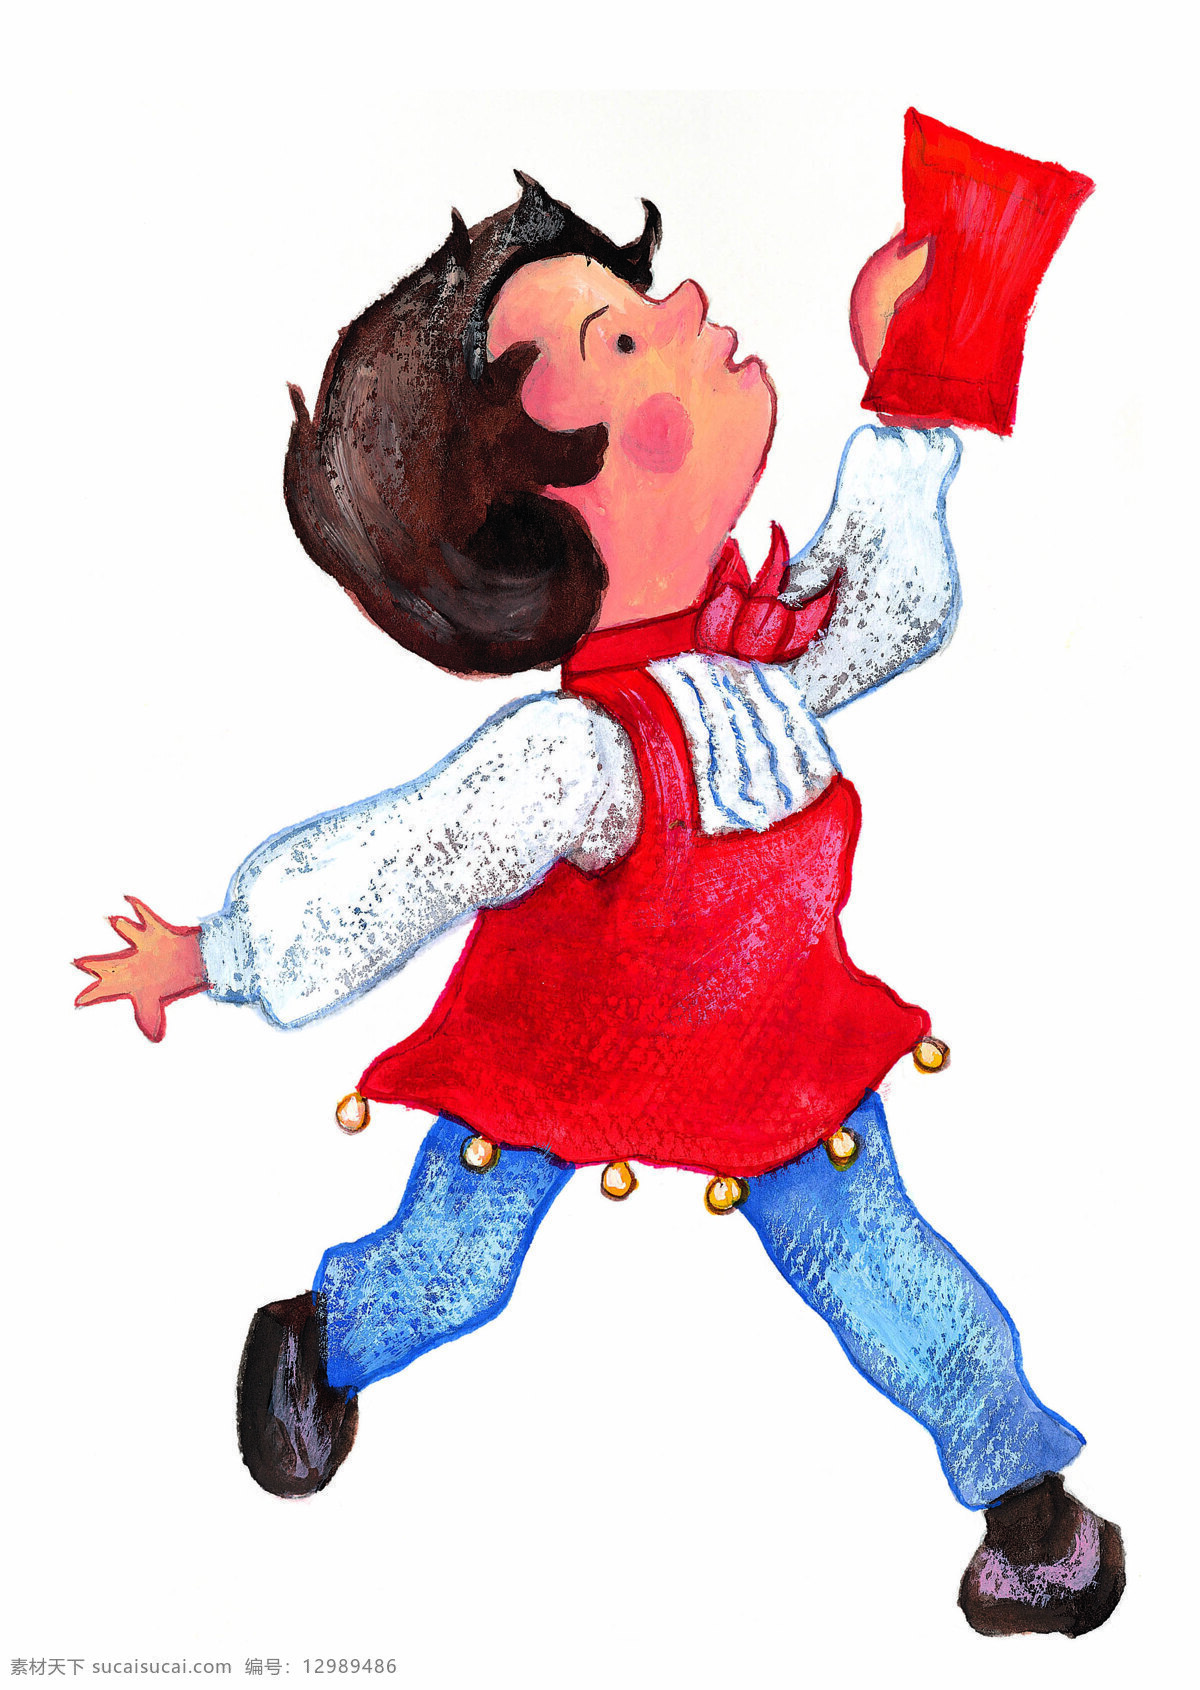 红包 小女孩 插画 传统文化 儿童画 高兴 红裙子 水彩画 小孩 白衬衫 红利是 短头发 文化艺术